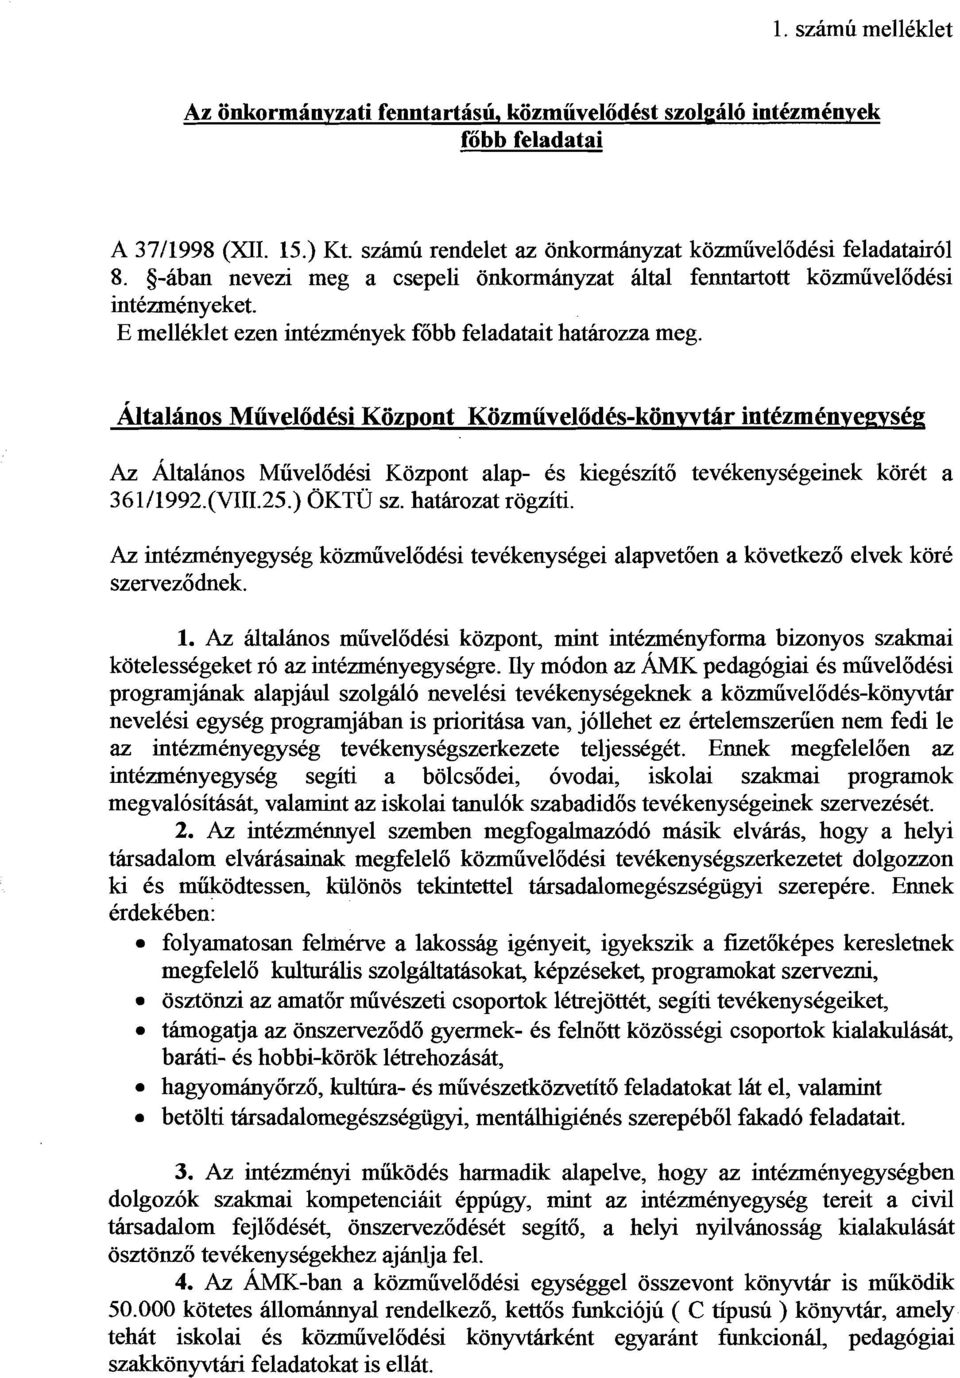 Az &talinos Muvelodksi Kozpont alap- es kiegeszito tevkkenydgeinek korkt a 3 6 1 /1992.(VIII.25.) OKTU sz. hatirozat rogziti.